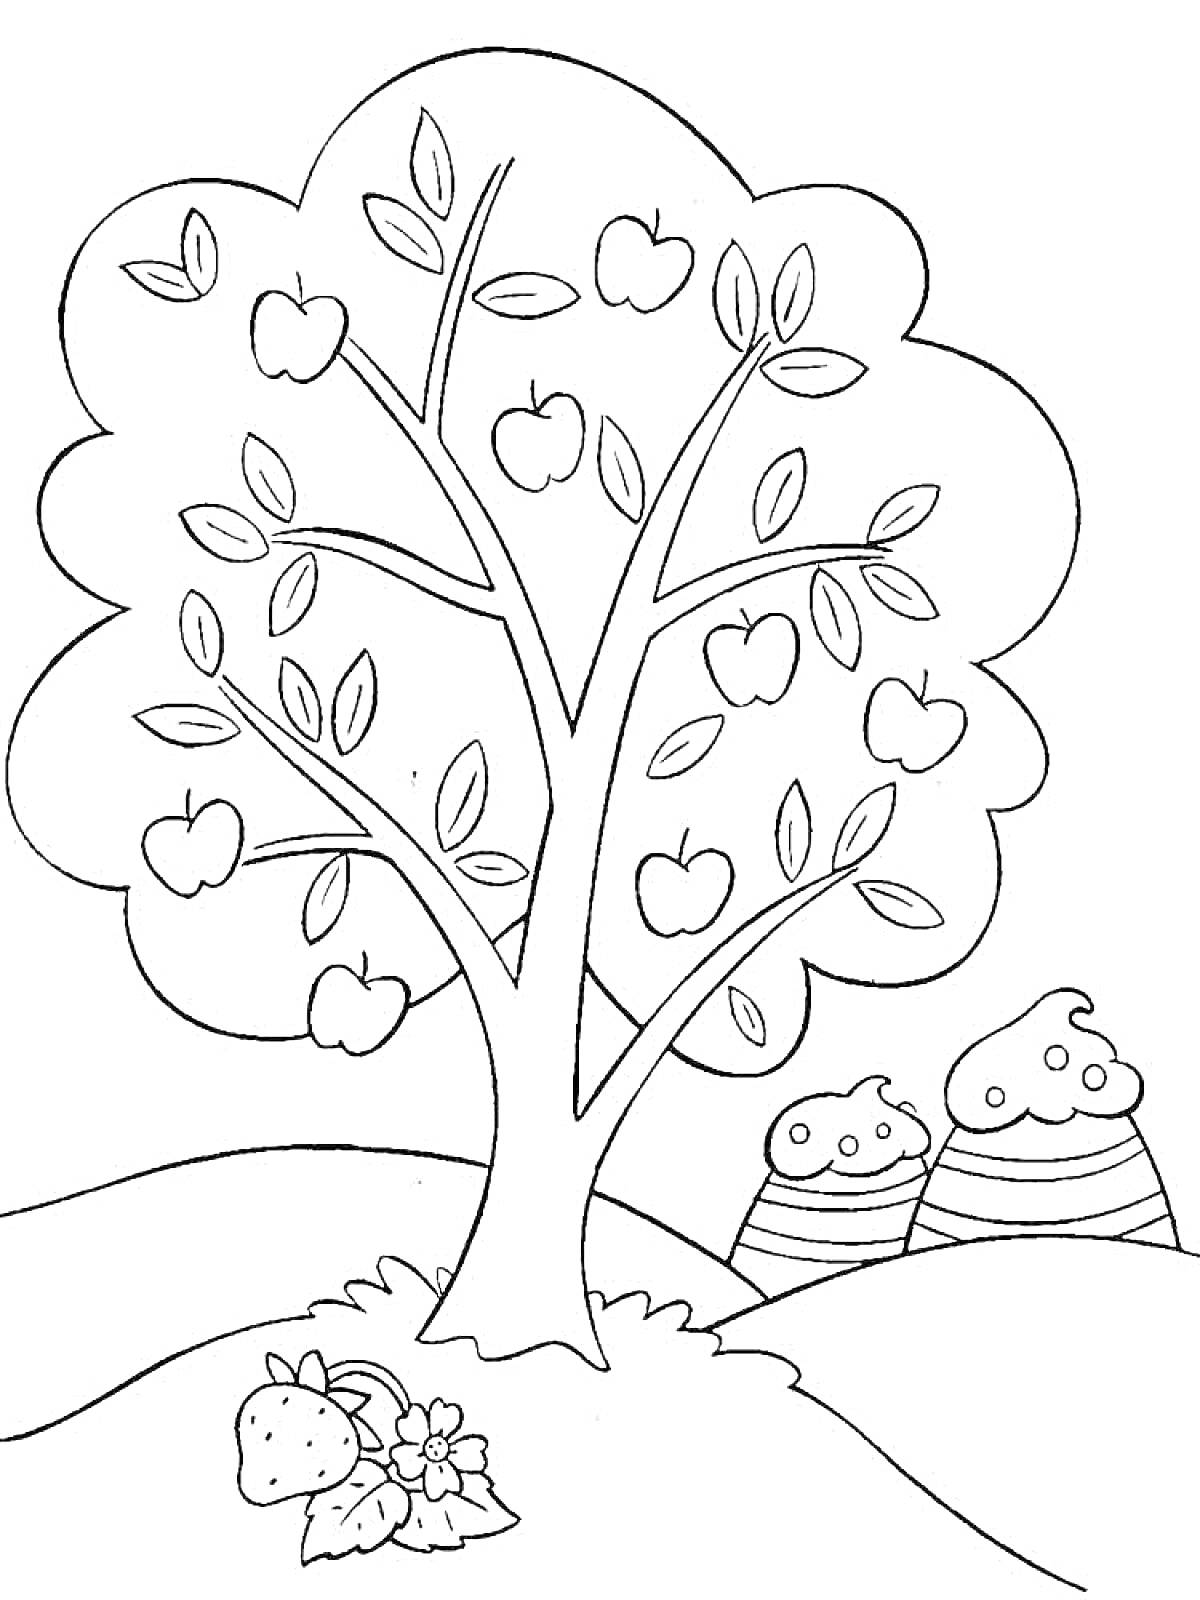 Раскраска Яблоня с яблоками, клубникой и двумя холмами